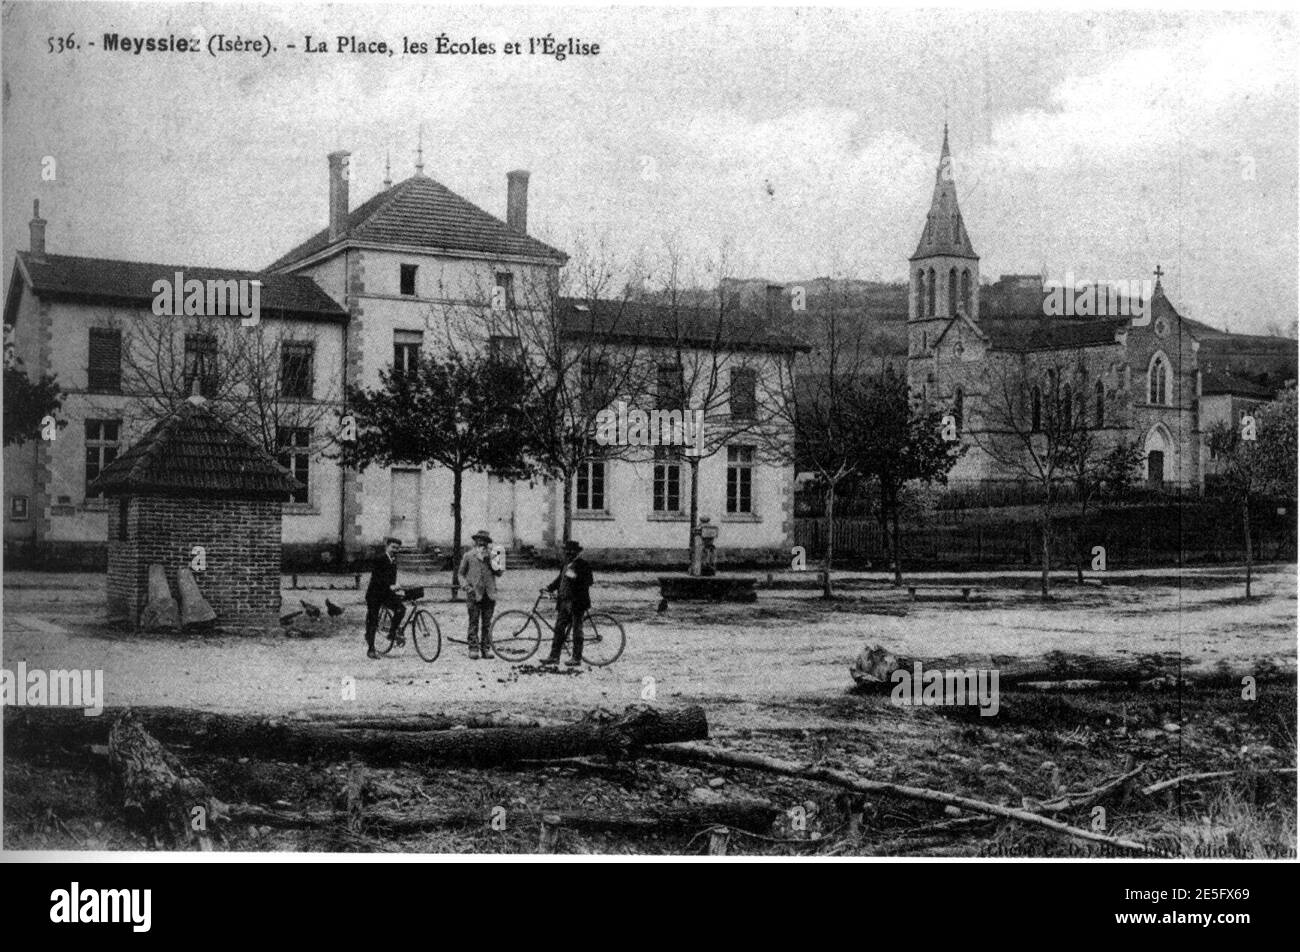 Meyssiez, la place, les écoles et 'église en 1912, p 125 de l'Isère les 533 communes - cliché C d'Blanchard, éditeur à Vienne. Banque D'Images